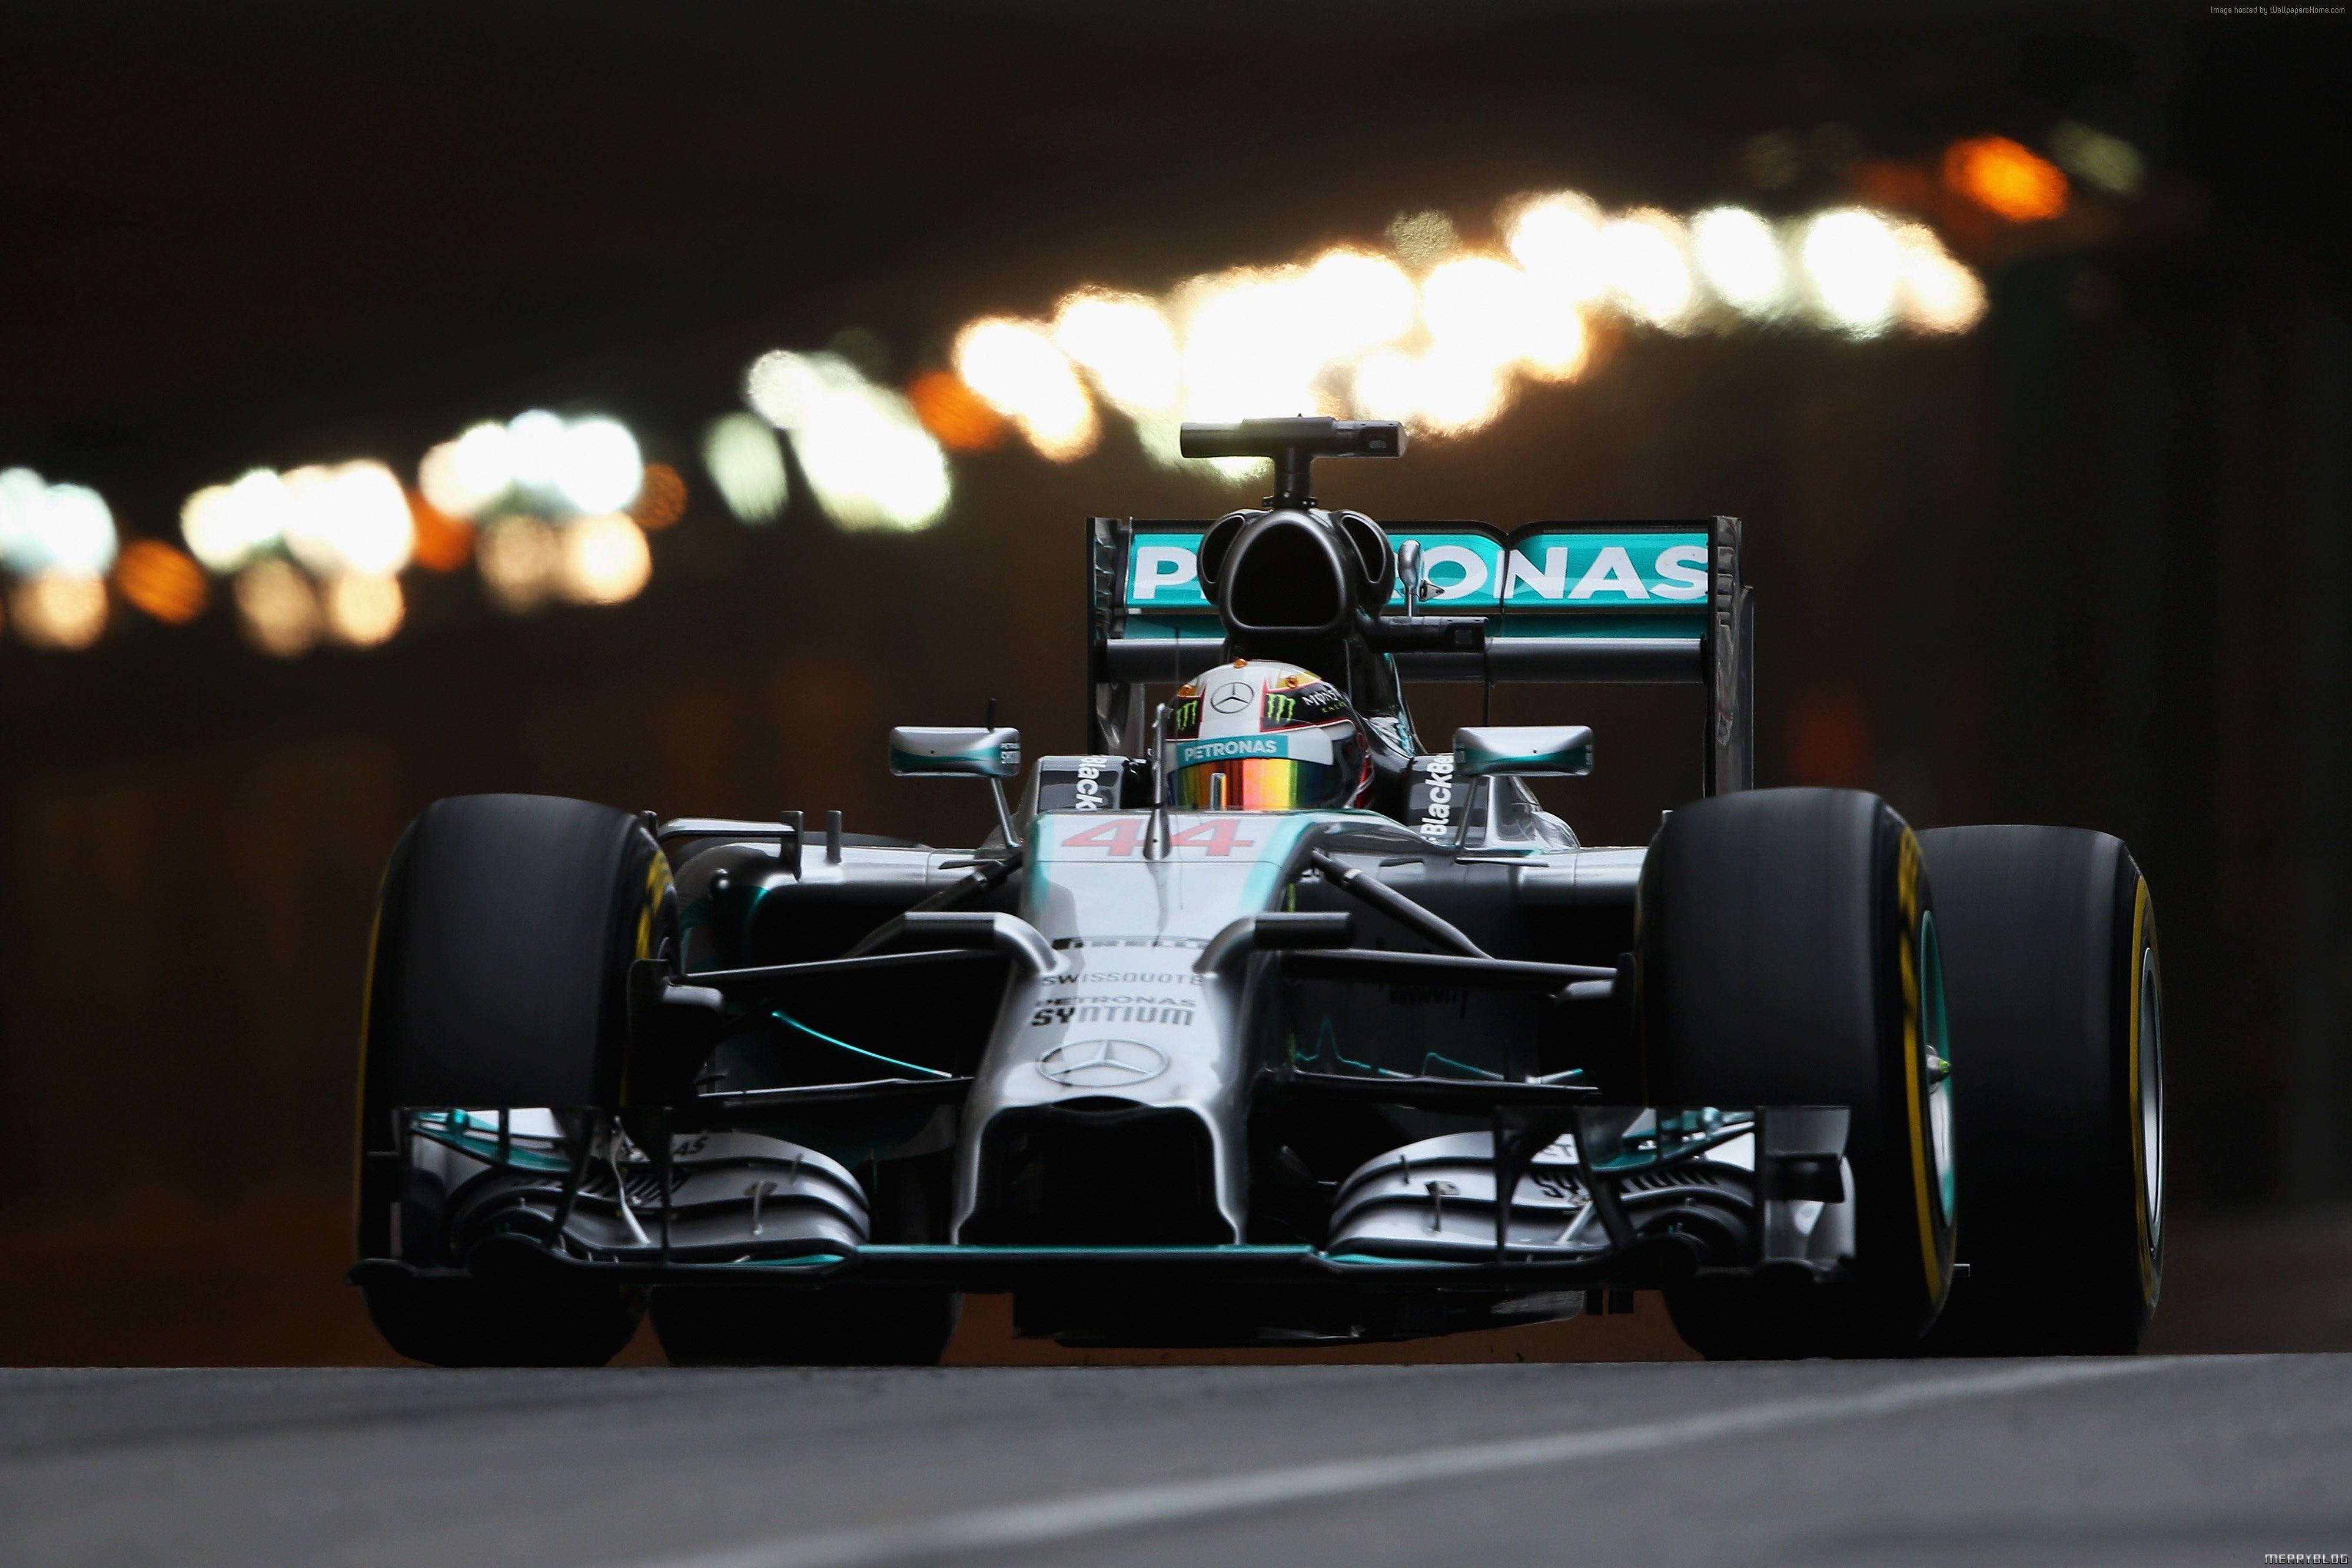 HD Wallpaper: Lewis Hamilton, Formula Racing, Sports Car, Helmet, Mercedes Benz